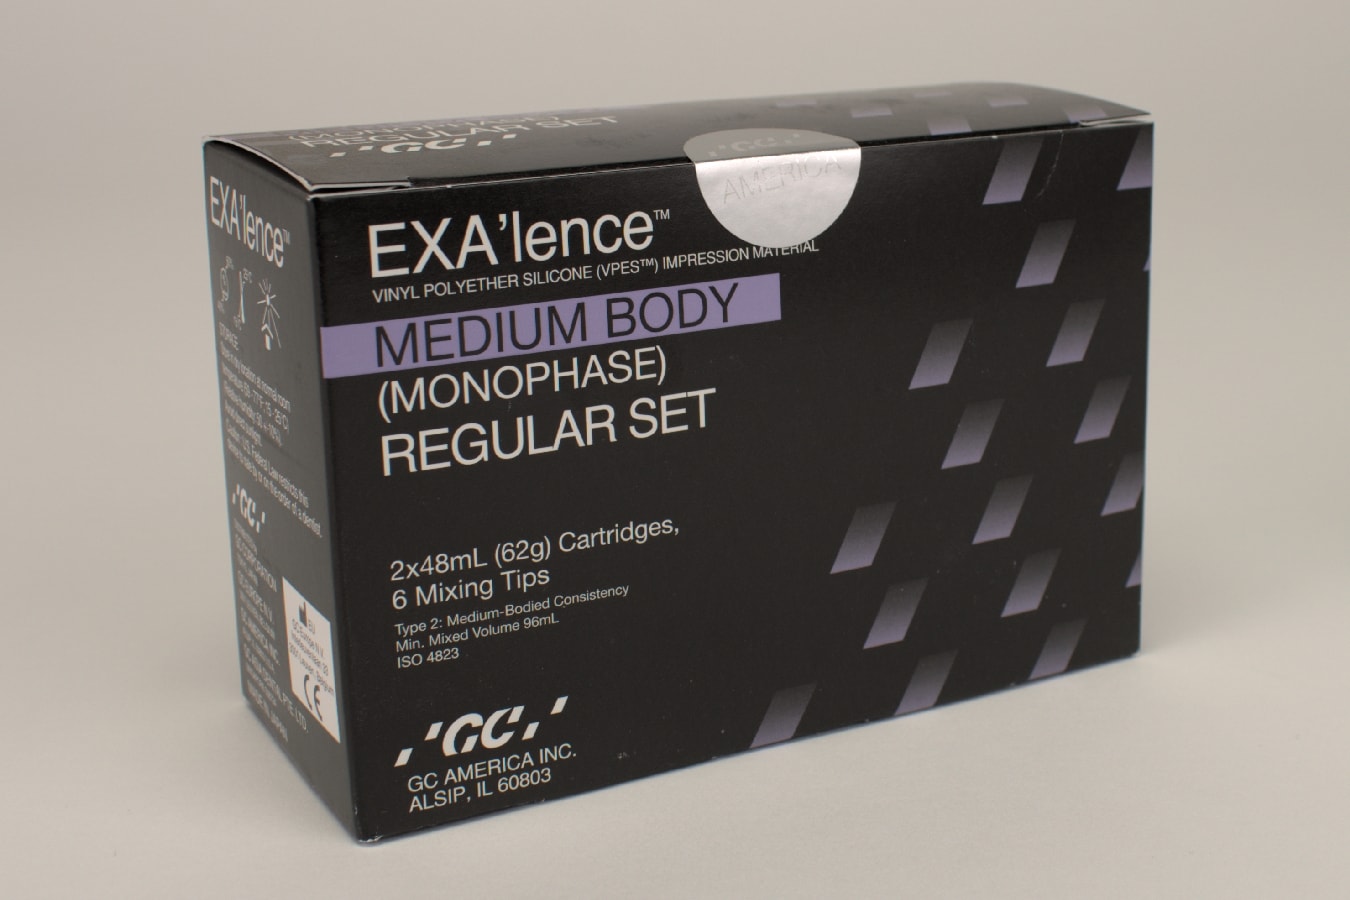 EXA'lence medium Body regular, 2 x 48 ml